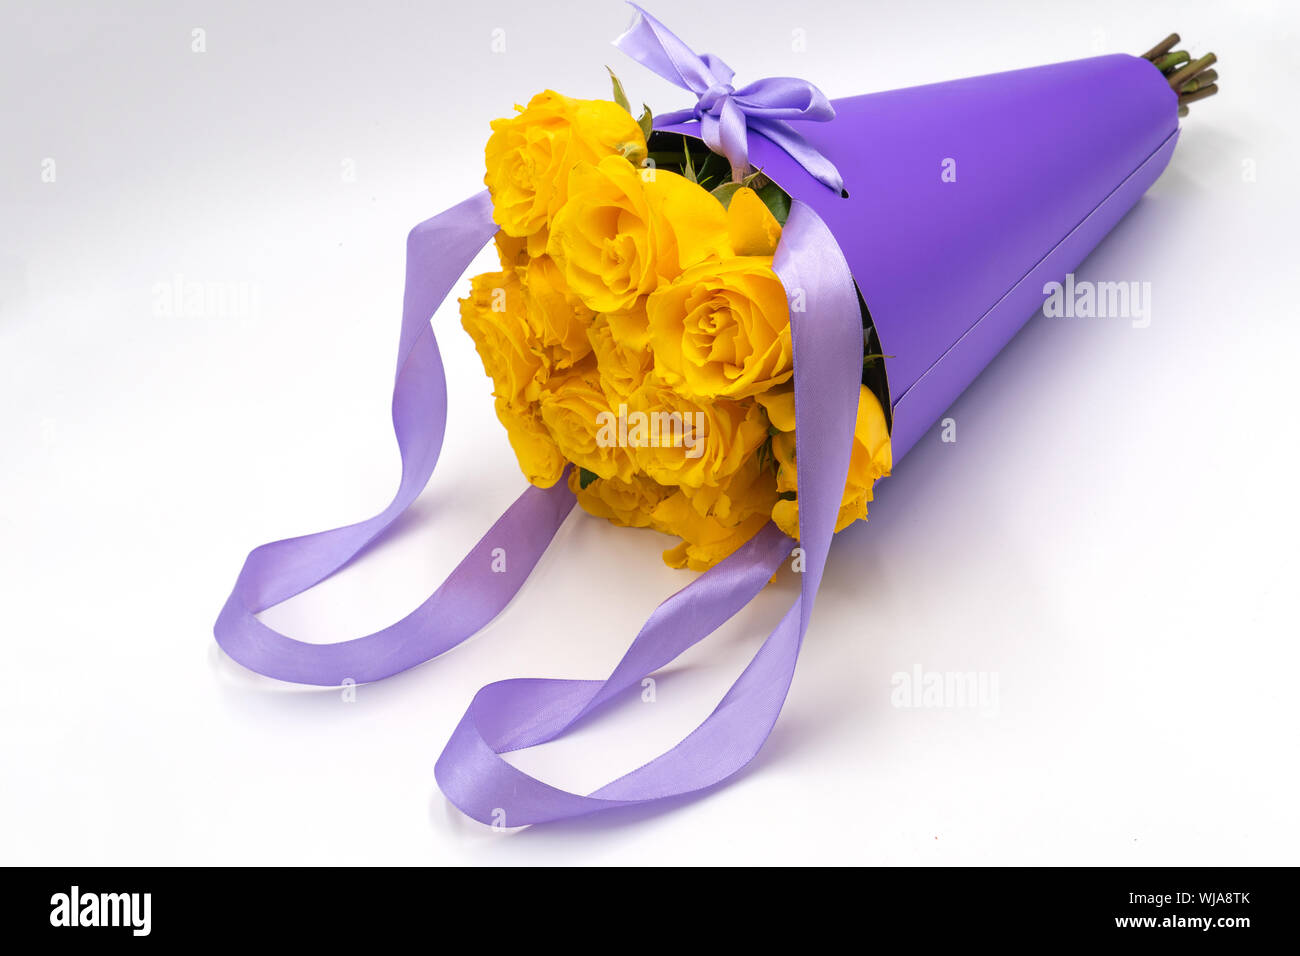 Un bouquet de roses jaunes dans un paquet élégant et moderne dans la forme d'un cône avec des poignées sur un fond blanc. La fête des mères et anniversaire. Banque D'Images